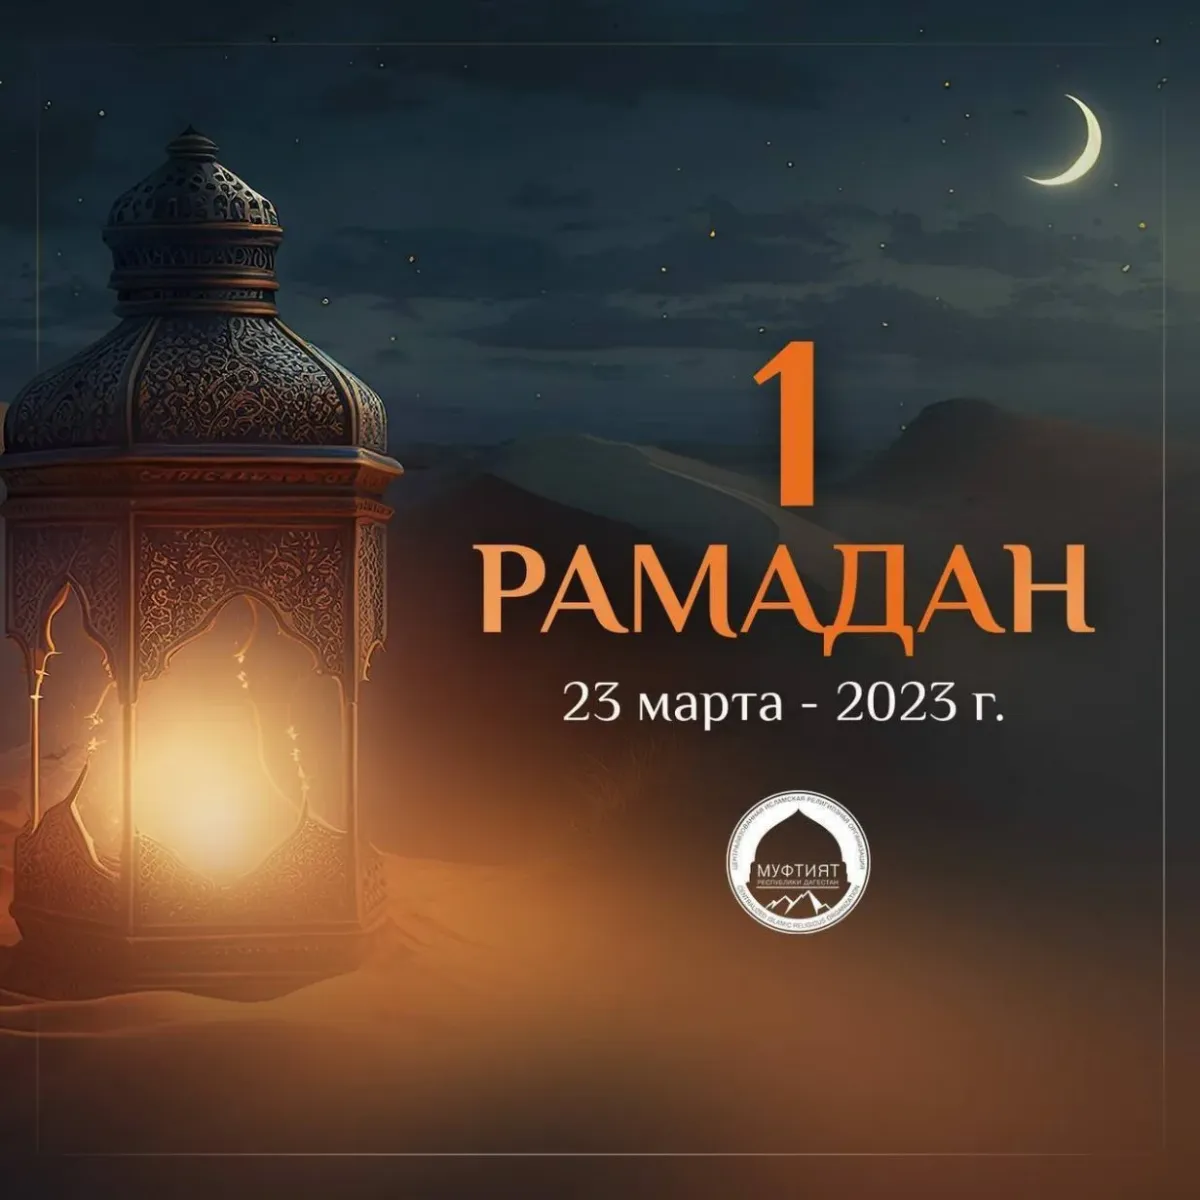 Мусульманские поздравления рамадан. Рамадан. Рамадан в 2023 году. Рамазан 2023 поздравляю. С началом Священного месяца Рамадан.